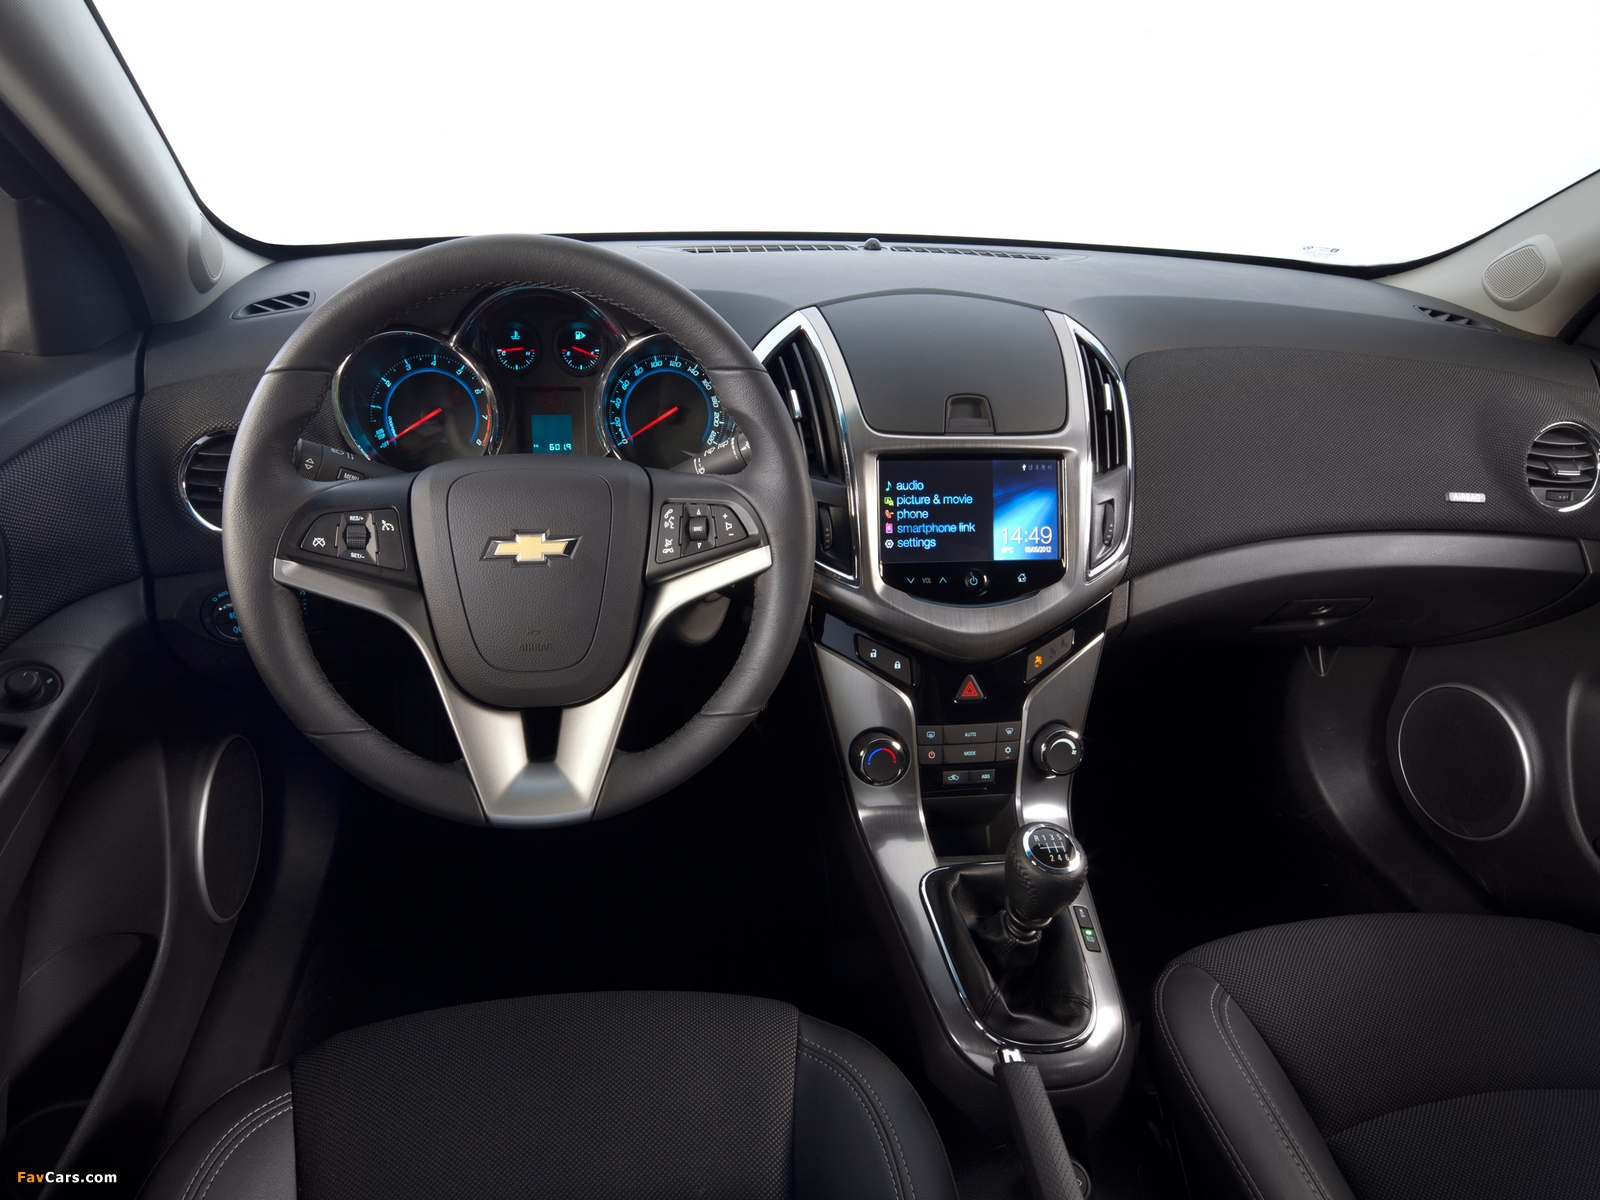 Chevrolet Cruze Hatchback (J300) 2012 images (1600 x 1200)